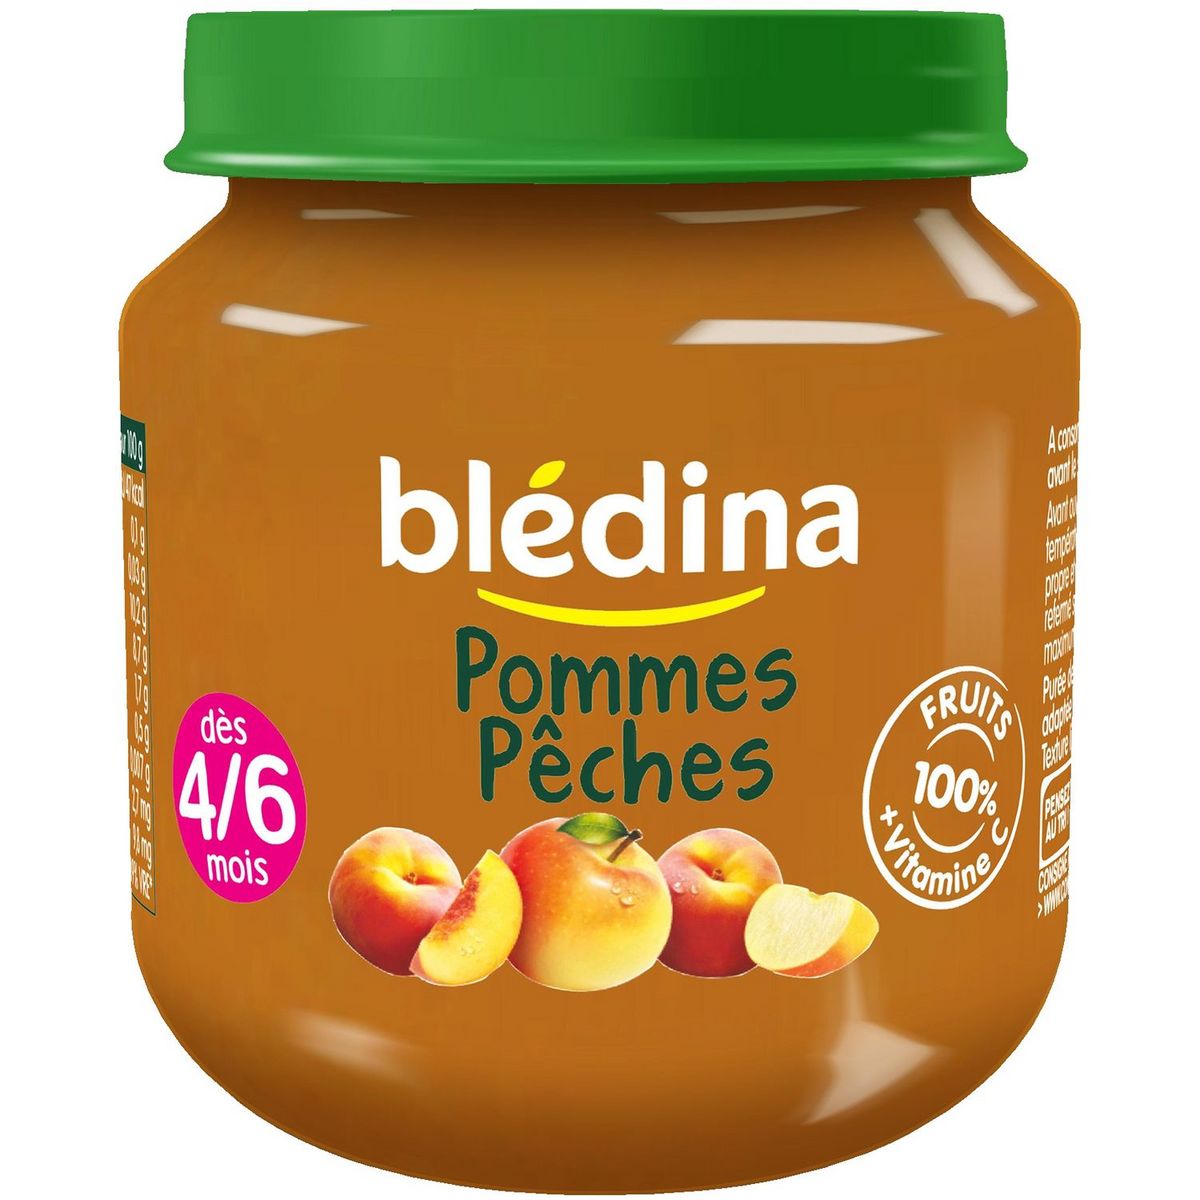 Bledina Apples Peaches